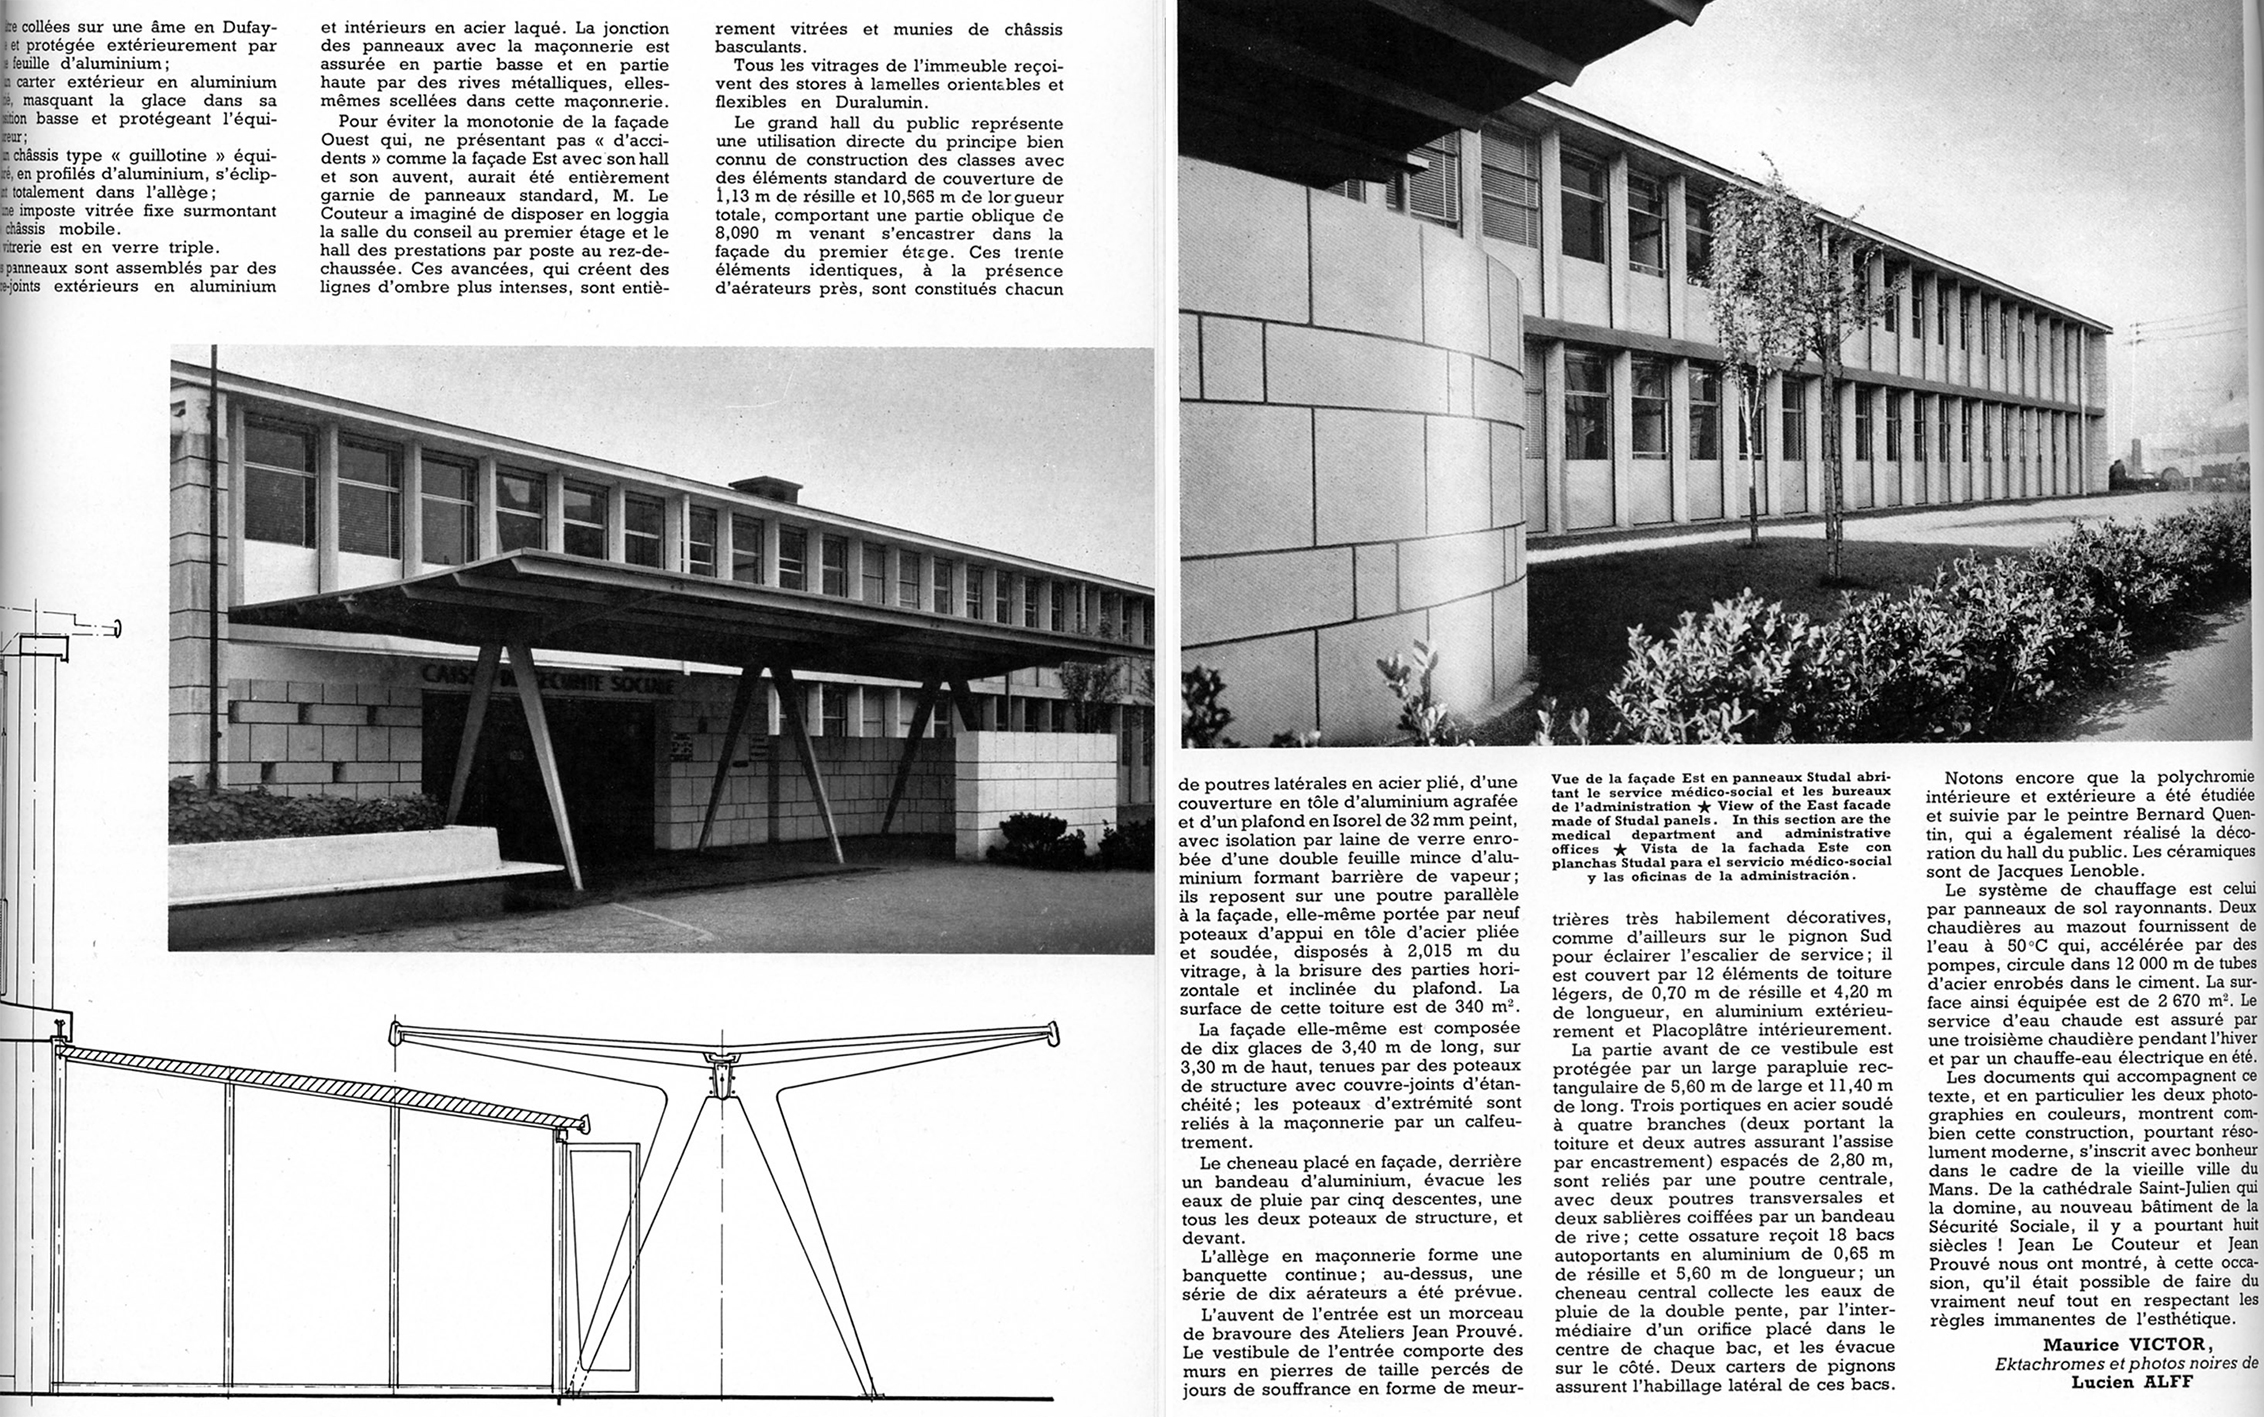 “The Social Security building at Le Mans”. <i>Techniques et Architecture,</i> no. 2, 1955.